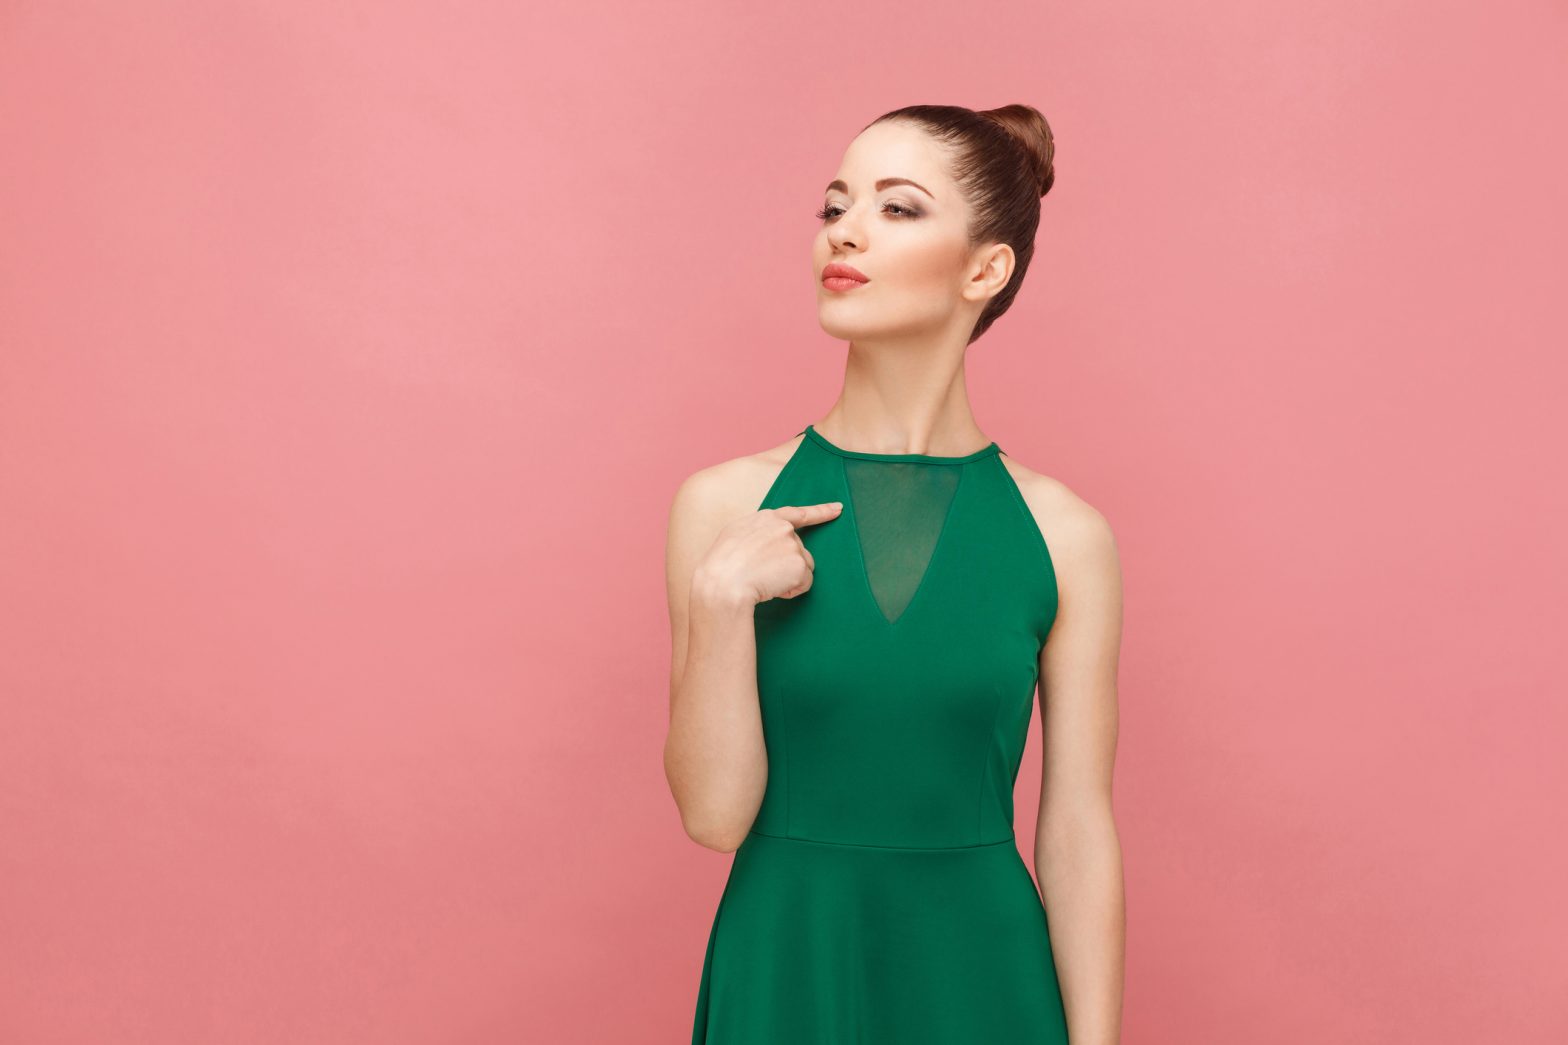 financialounge.com L'industria del fashion investe sul verde: è il colore più di moda